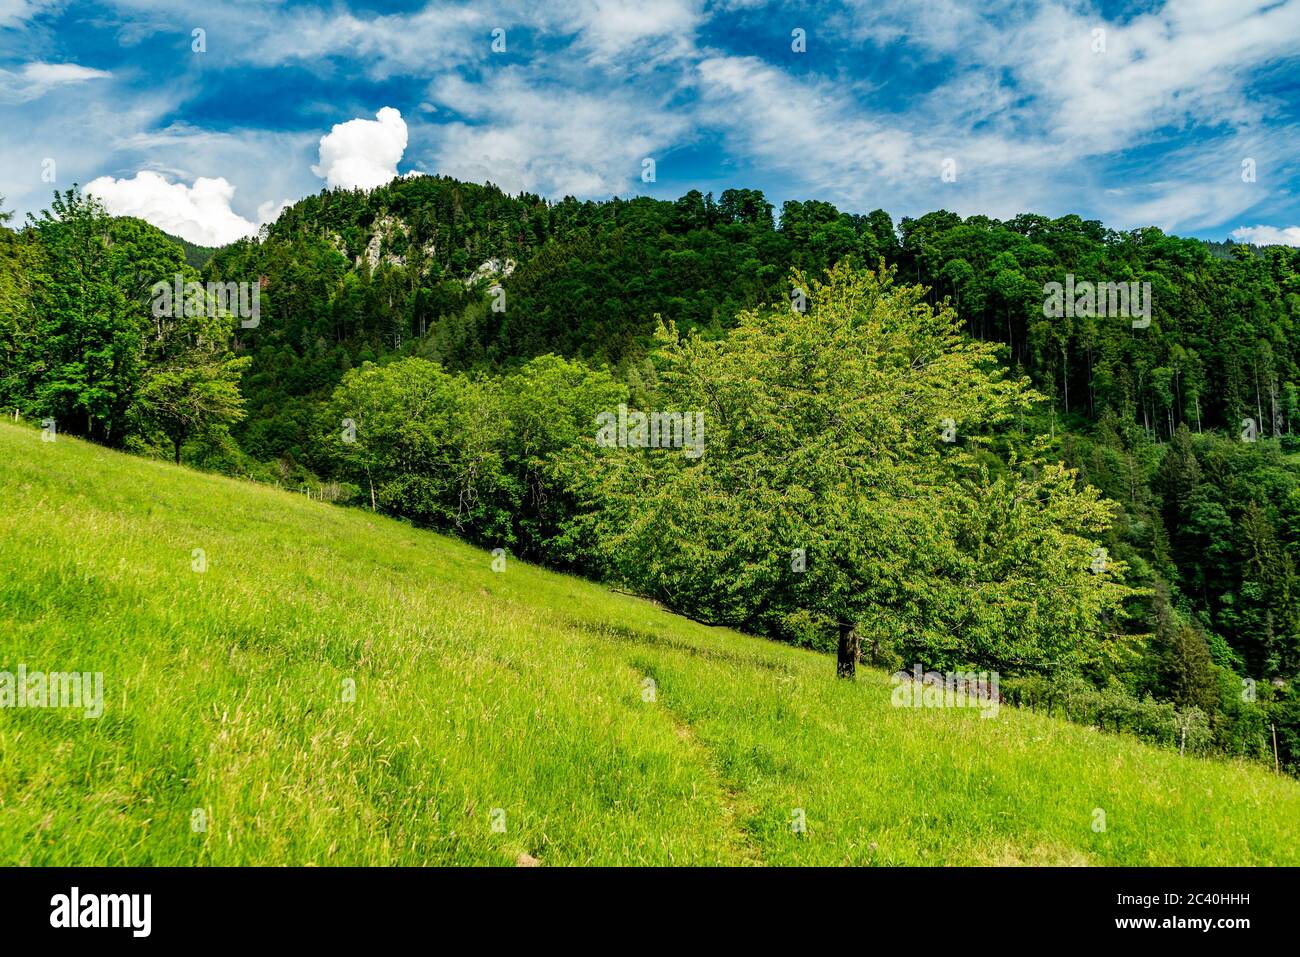 Kirschbaum in Orsanka, Klaus, Vorarlberg, Austria, ein schöner grosser Baum steht allein auf der Wiese, am Berghang, Bergen und Wald im Hintergrund Stock Photo